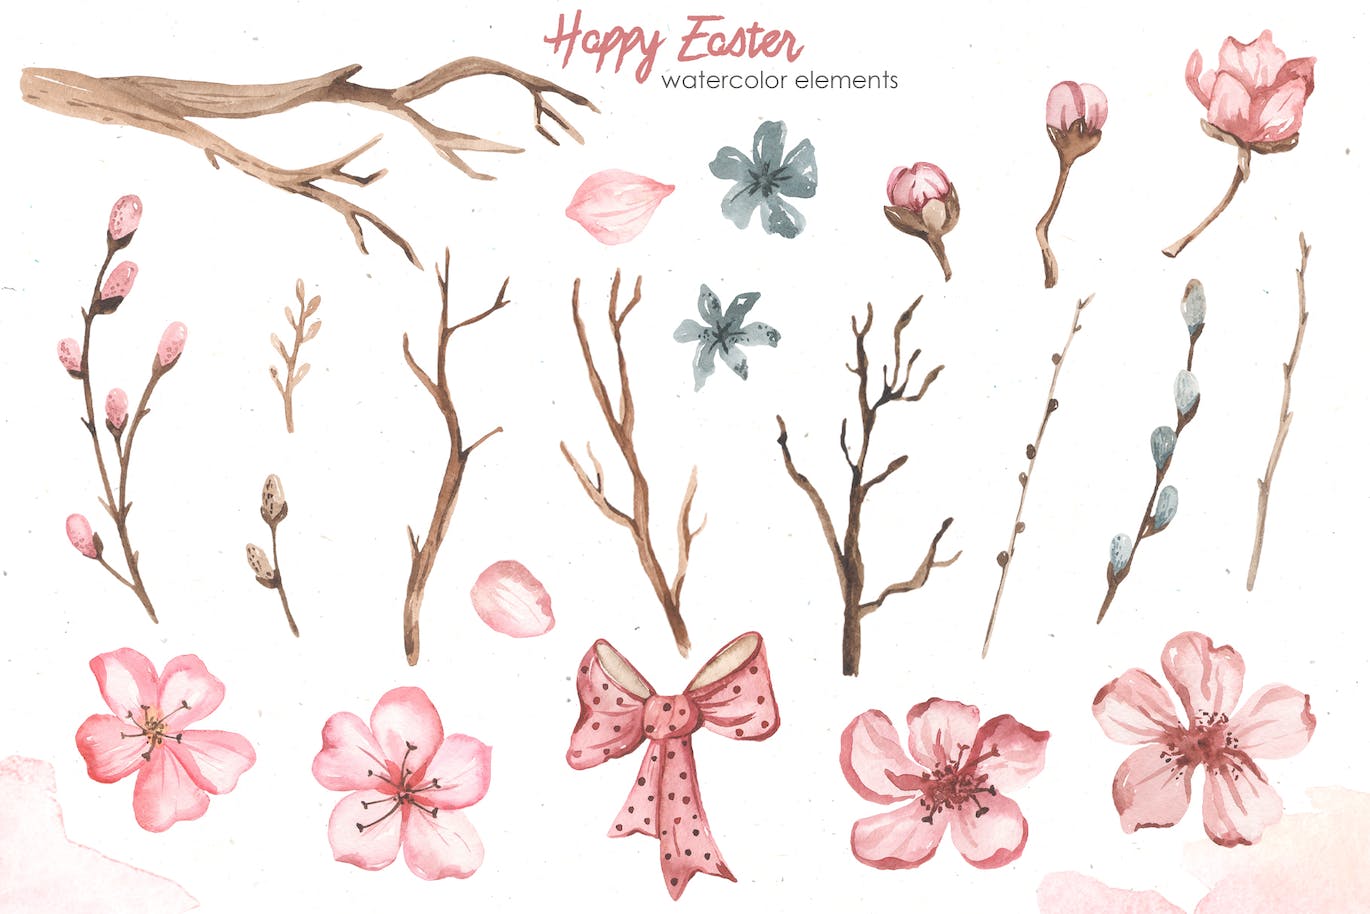 复活节快乐元素水彩画集 Happy Easter watercolor-6